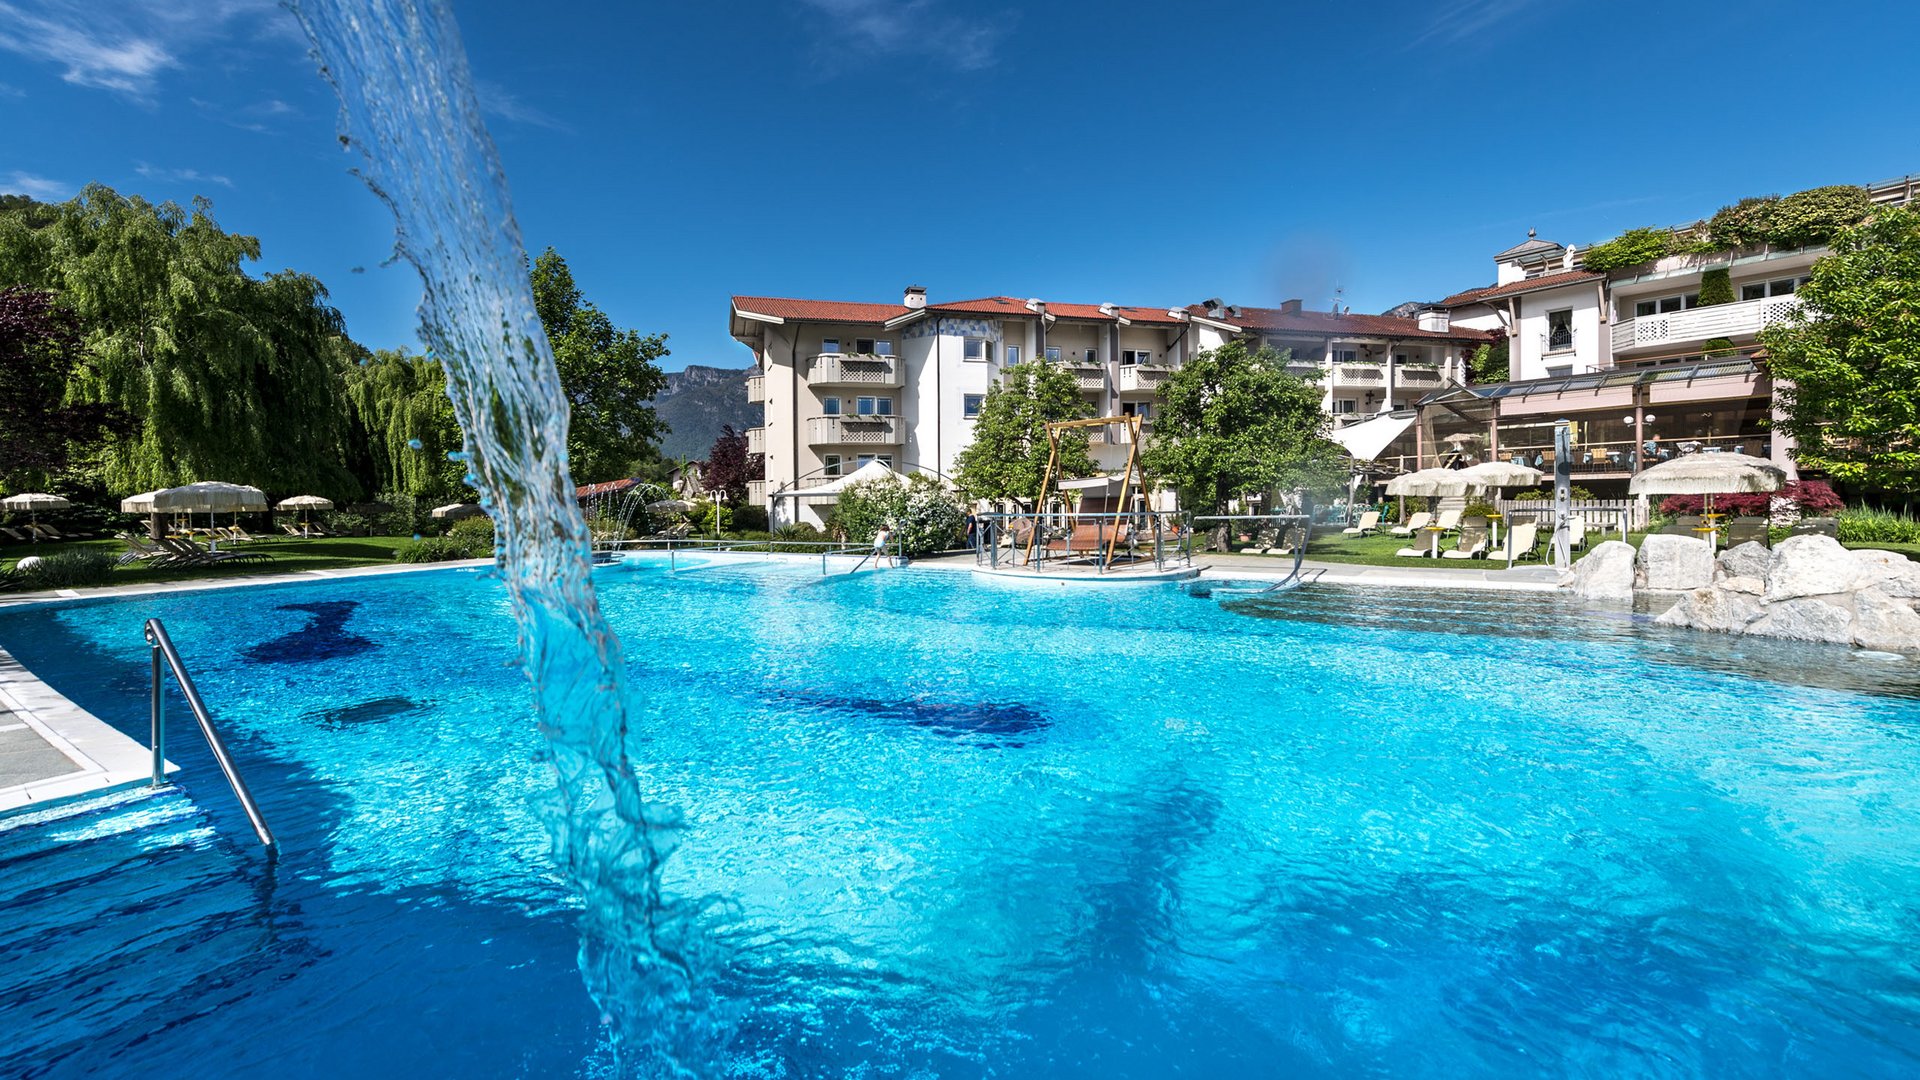 Urlaub in Südtirol im Hotel mit Pool am See